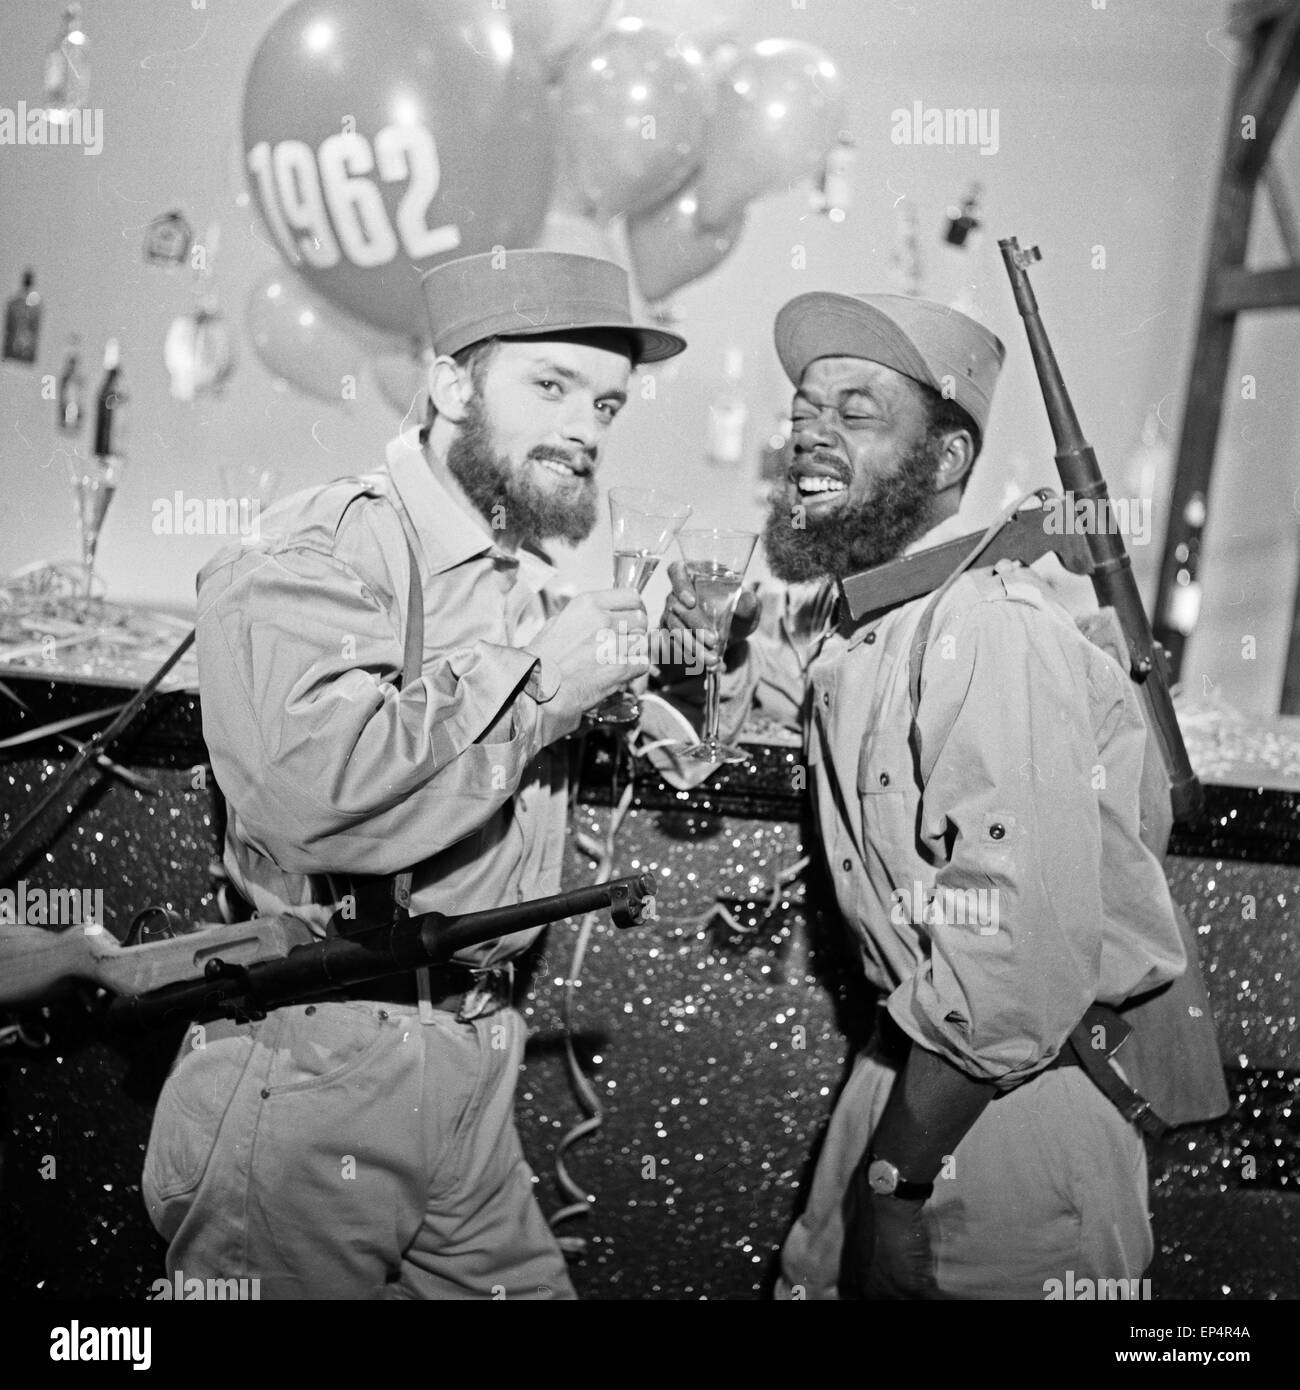 Die große Show zu Silvester 1961/62  des NDR, Sketch: Billy Mo (rechts) in einer Persiflage auf Kuba, Deutschland 1960er Jahre. Stock Photo